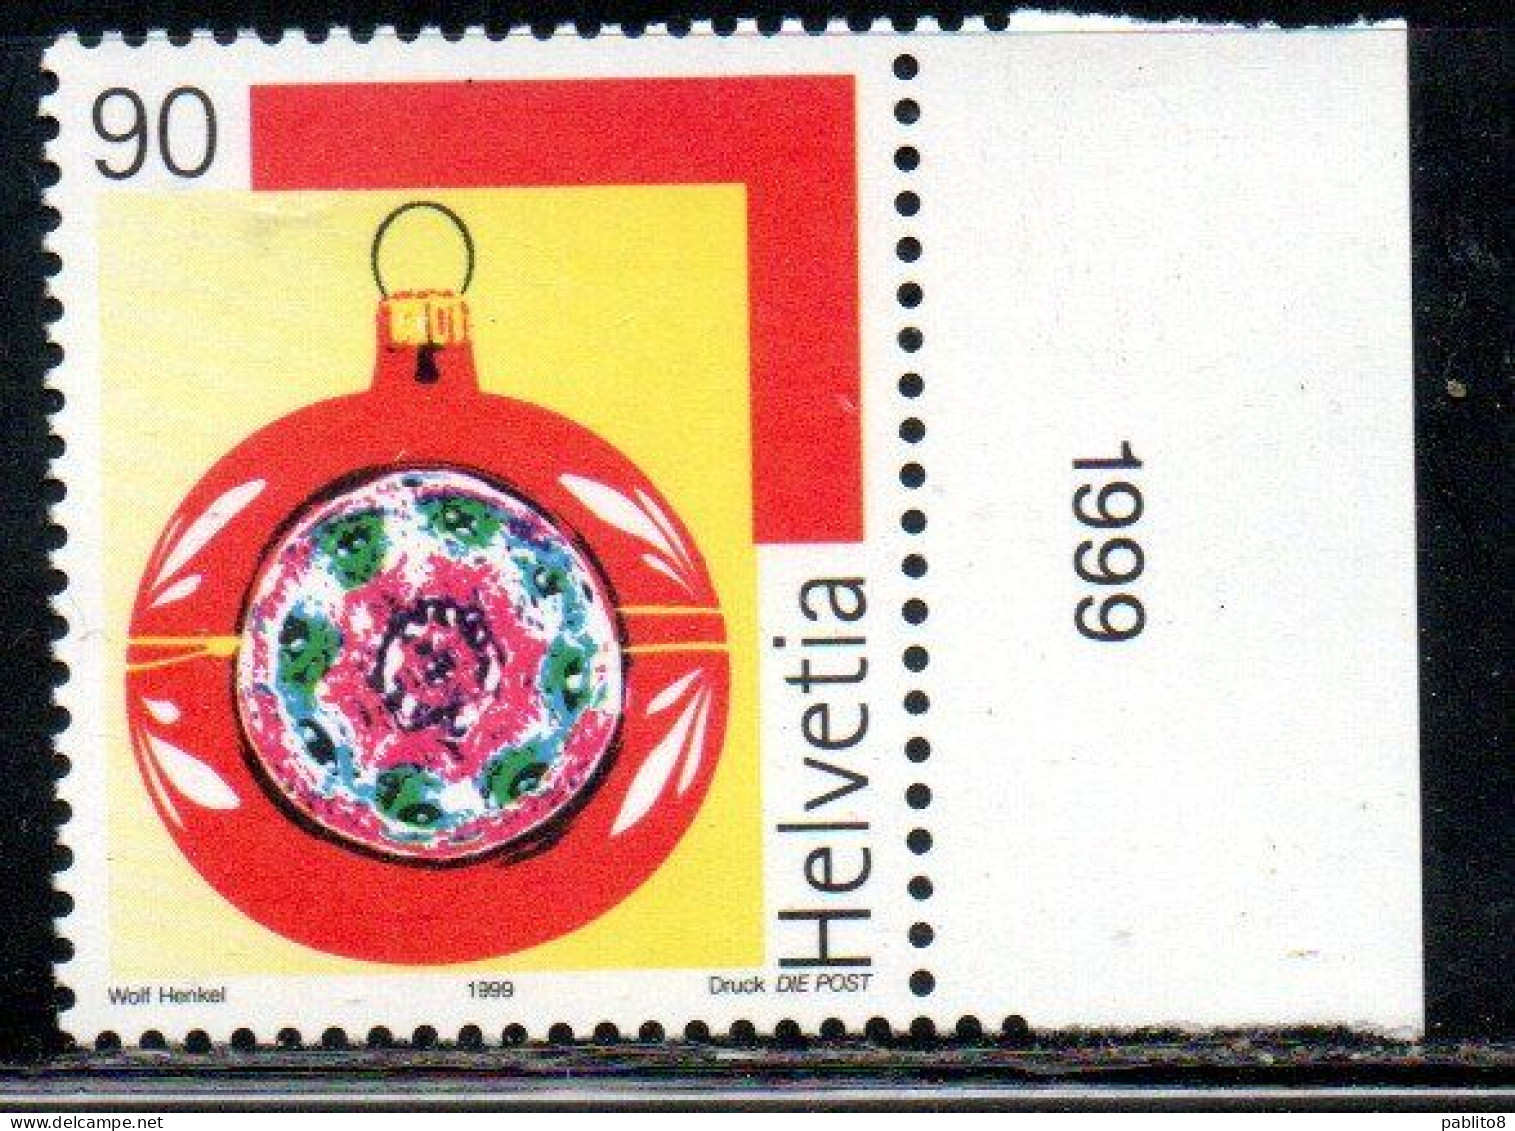 SWITZERLAND SUISSE SCHWEIZ SVIZZERA HELVETIA 1999 CHRISTMAS WRAPPING NATALE NOEL WEIHNACHTEN NAVIDAD 90c MNH - Unused Stamps